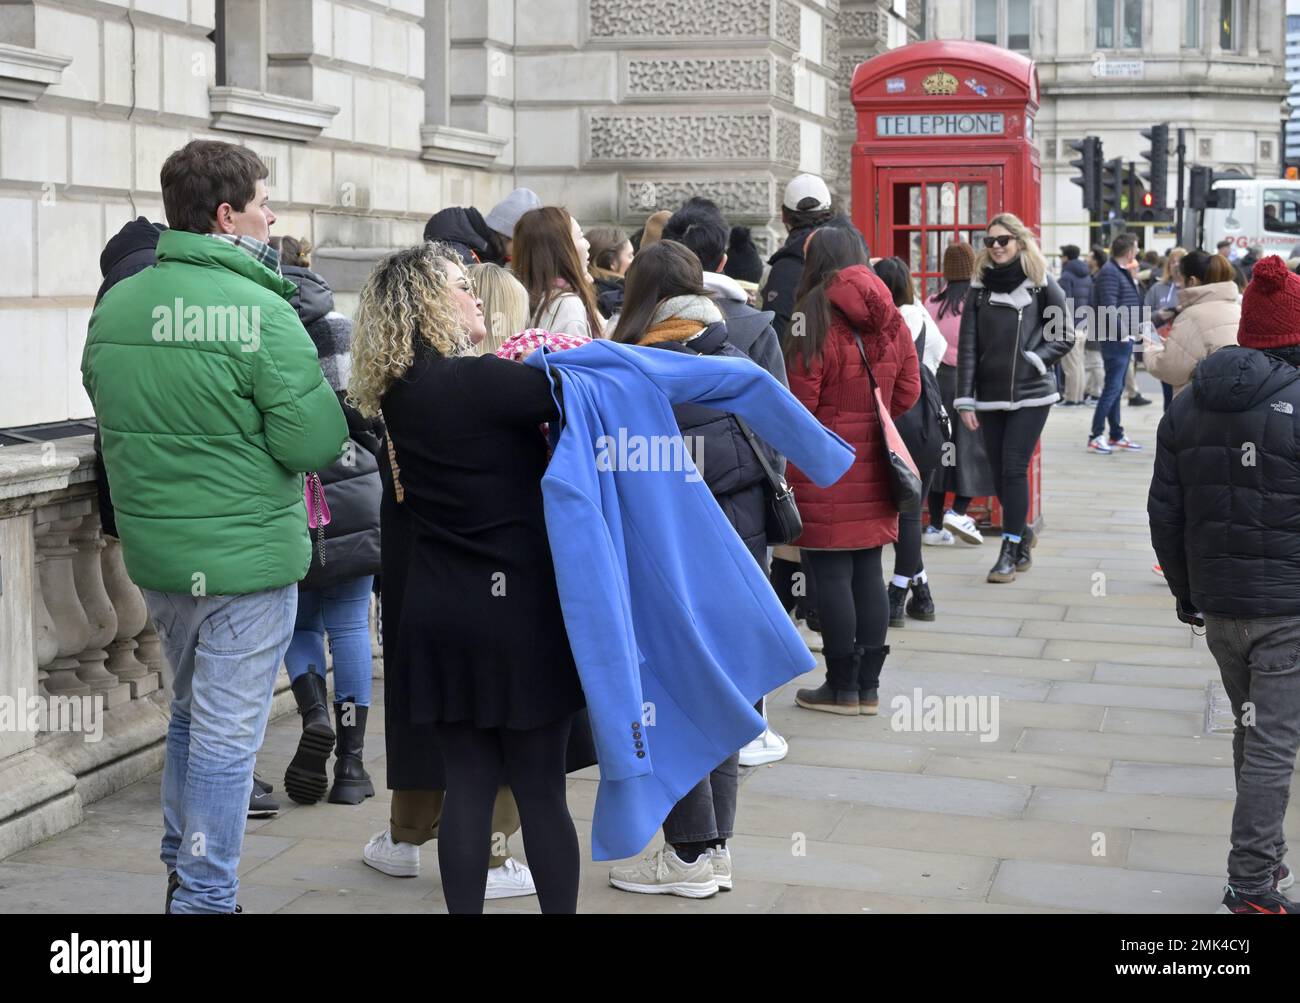 Londres, Inglaterra, Reino Unido. Los turistas hacen cola para hacerse una foto en uno de los icónicos teléfonos rojos de Parliament Square, Westminster. Foto de stock